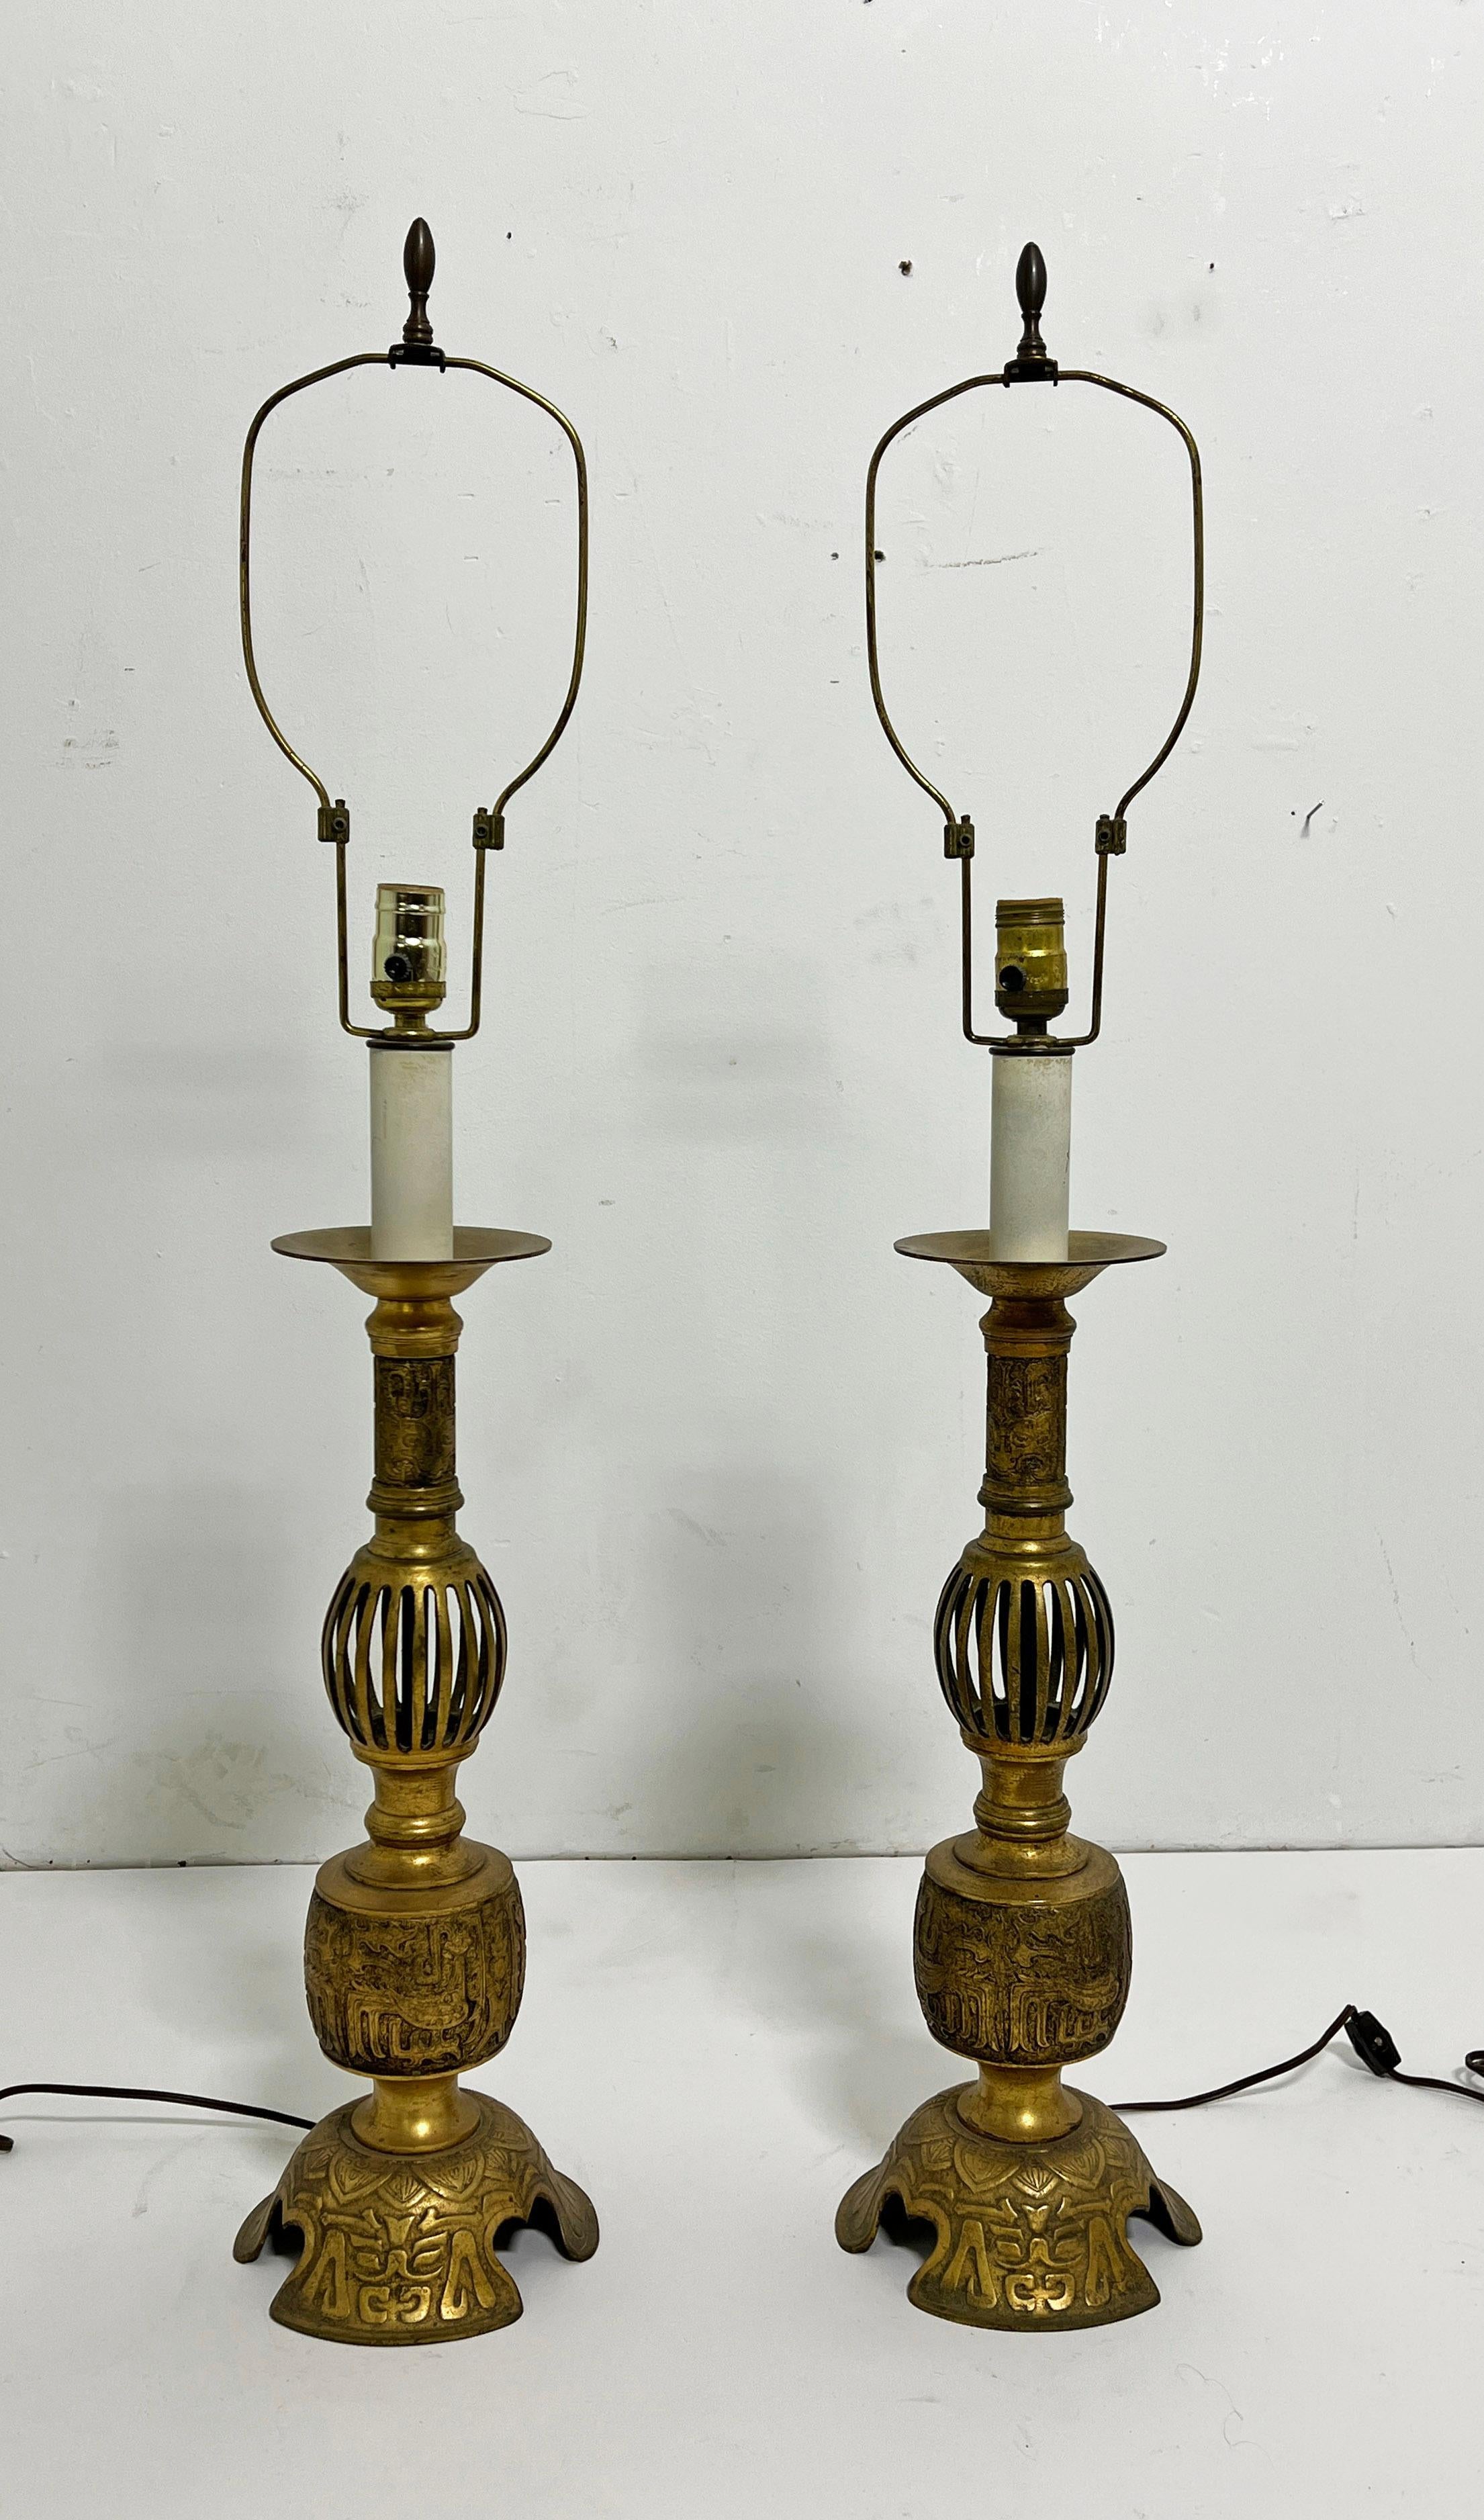 Paire de chandeliers chinois anciens en bronze transformés en lampes, vers la fin des années 1800. 

38